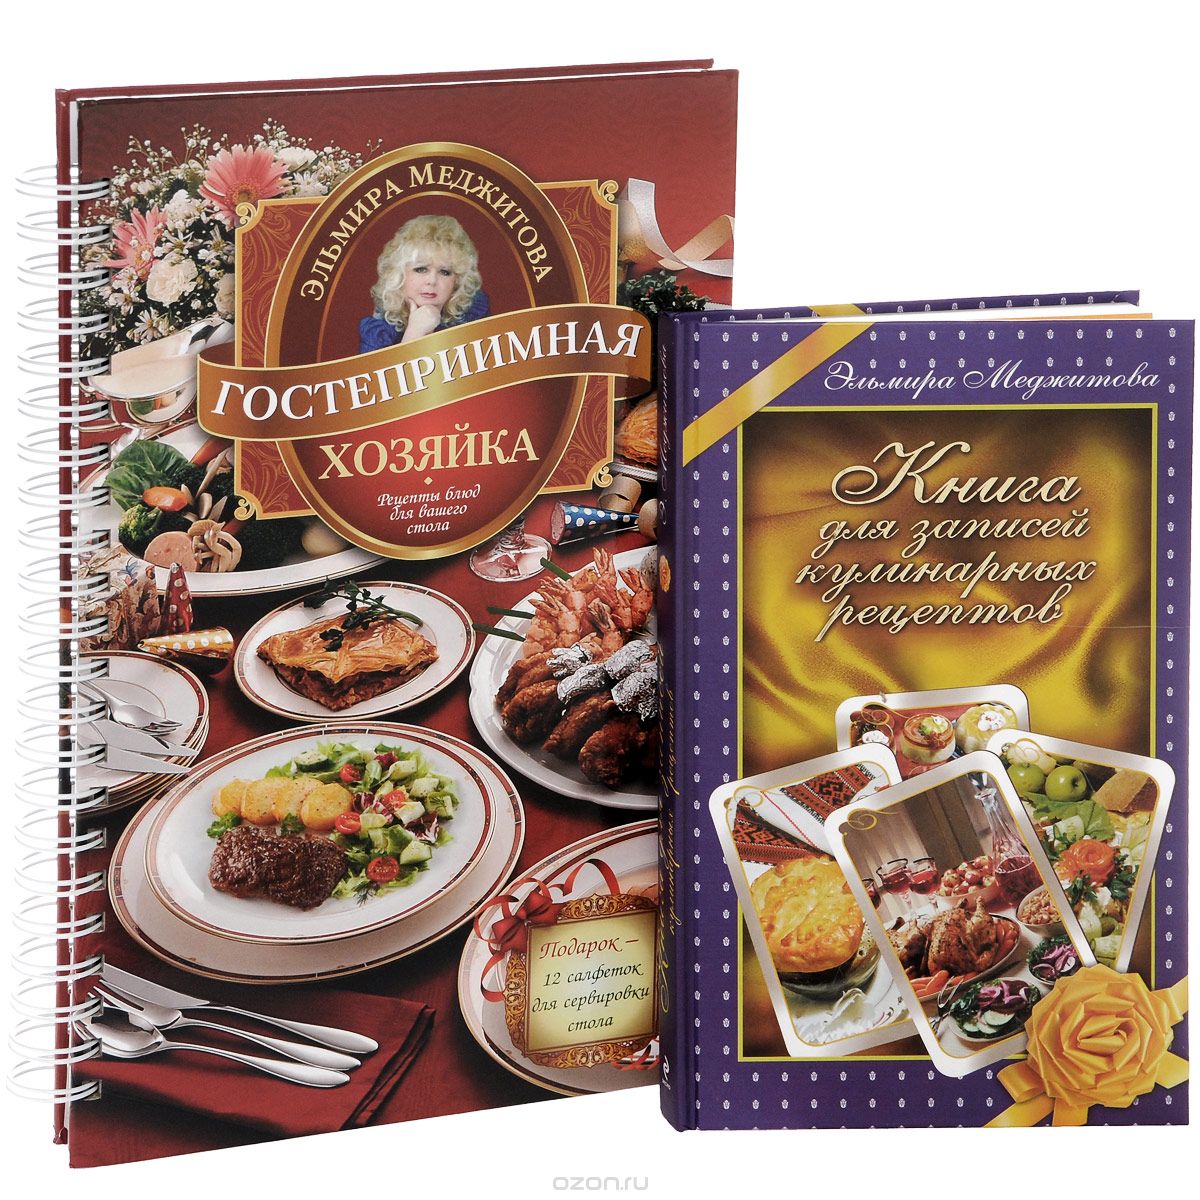 Скачать книгу "Гостеприимная хозяйка. Рецепты блюд для вашего стола. Книга для записей кулинарных рецептов (комплект из 2 книг), Эльмира Меджитова"